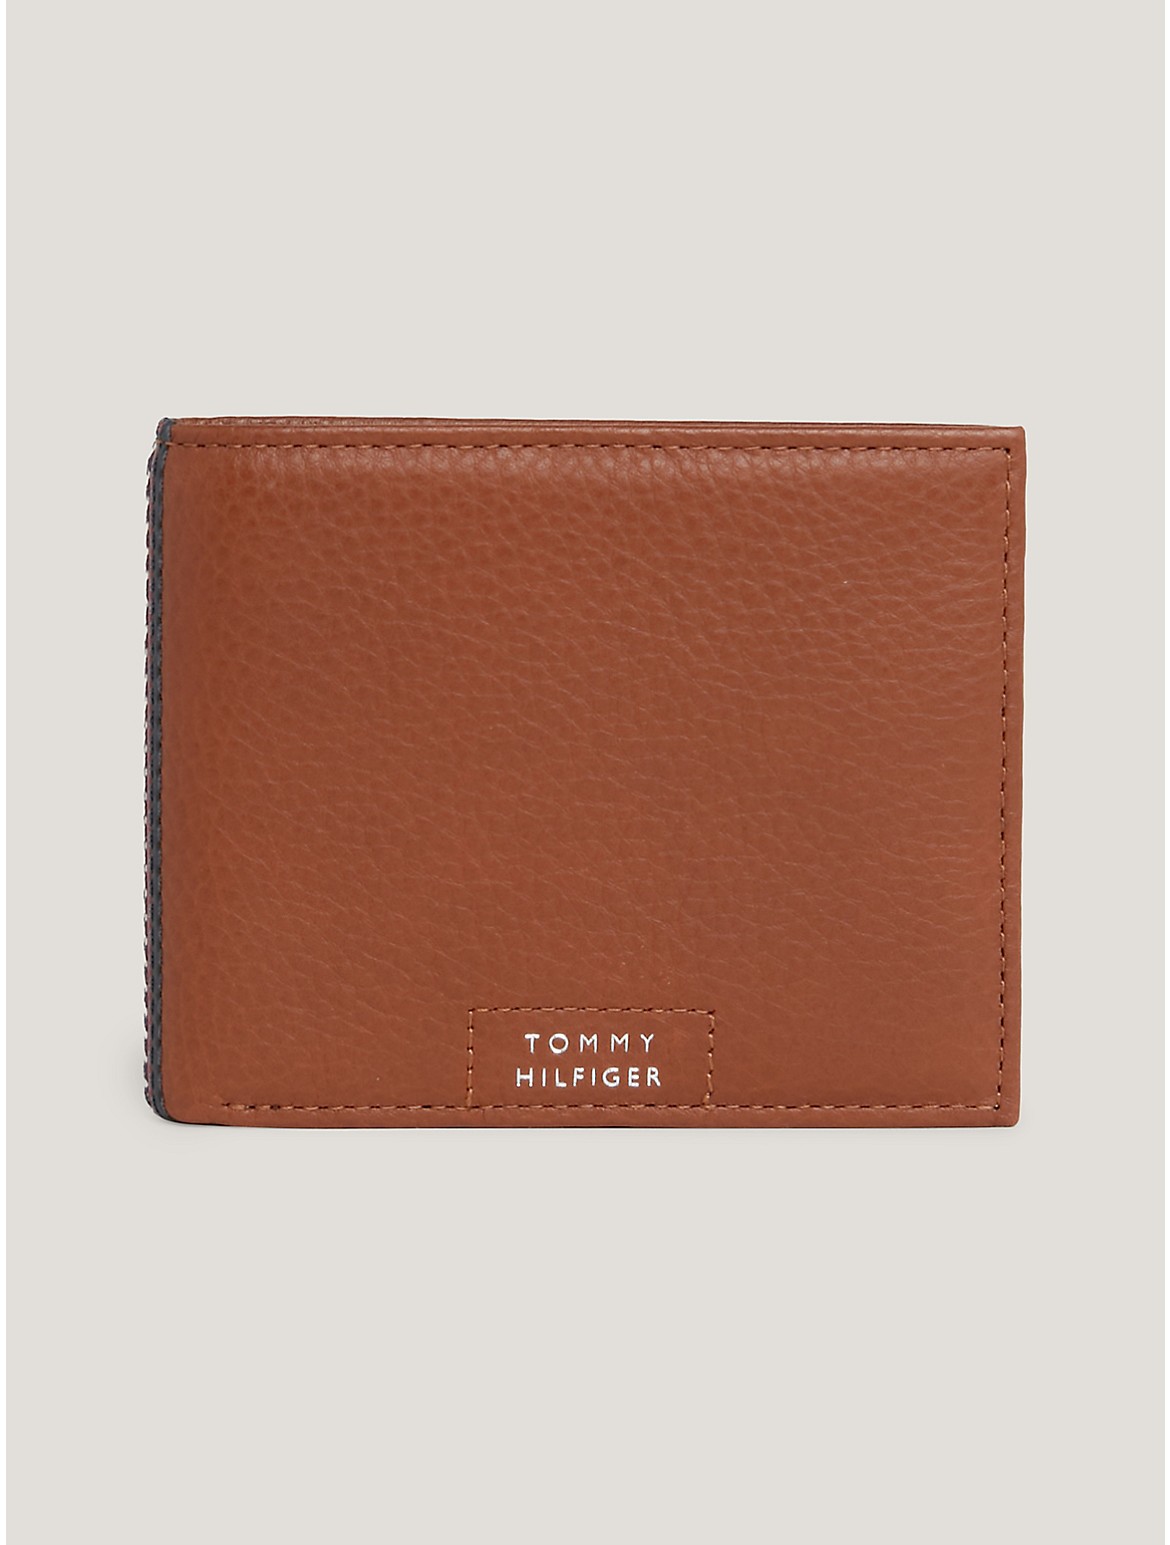 Tommy Hilfiger Men's Hilfiger Leather Card Wallet